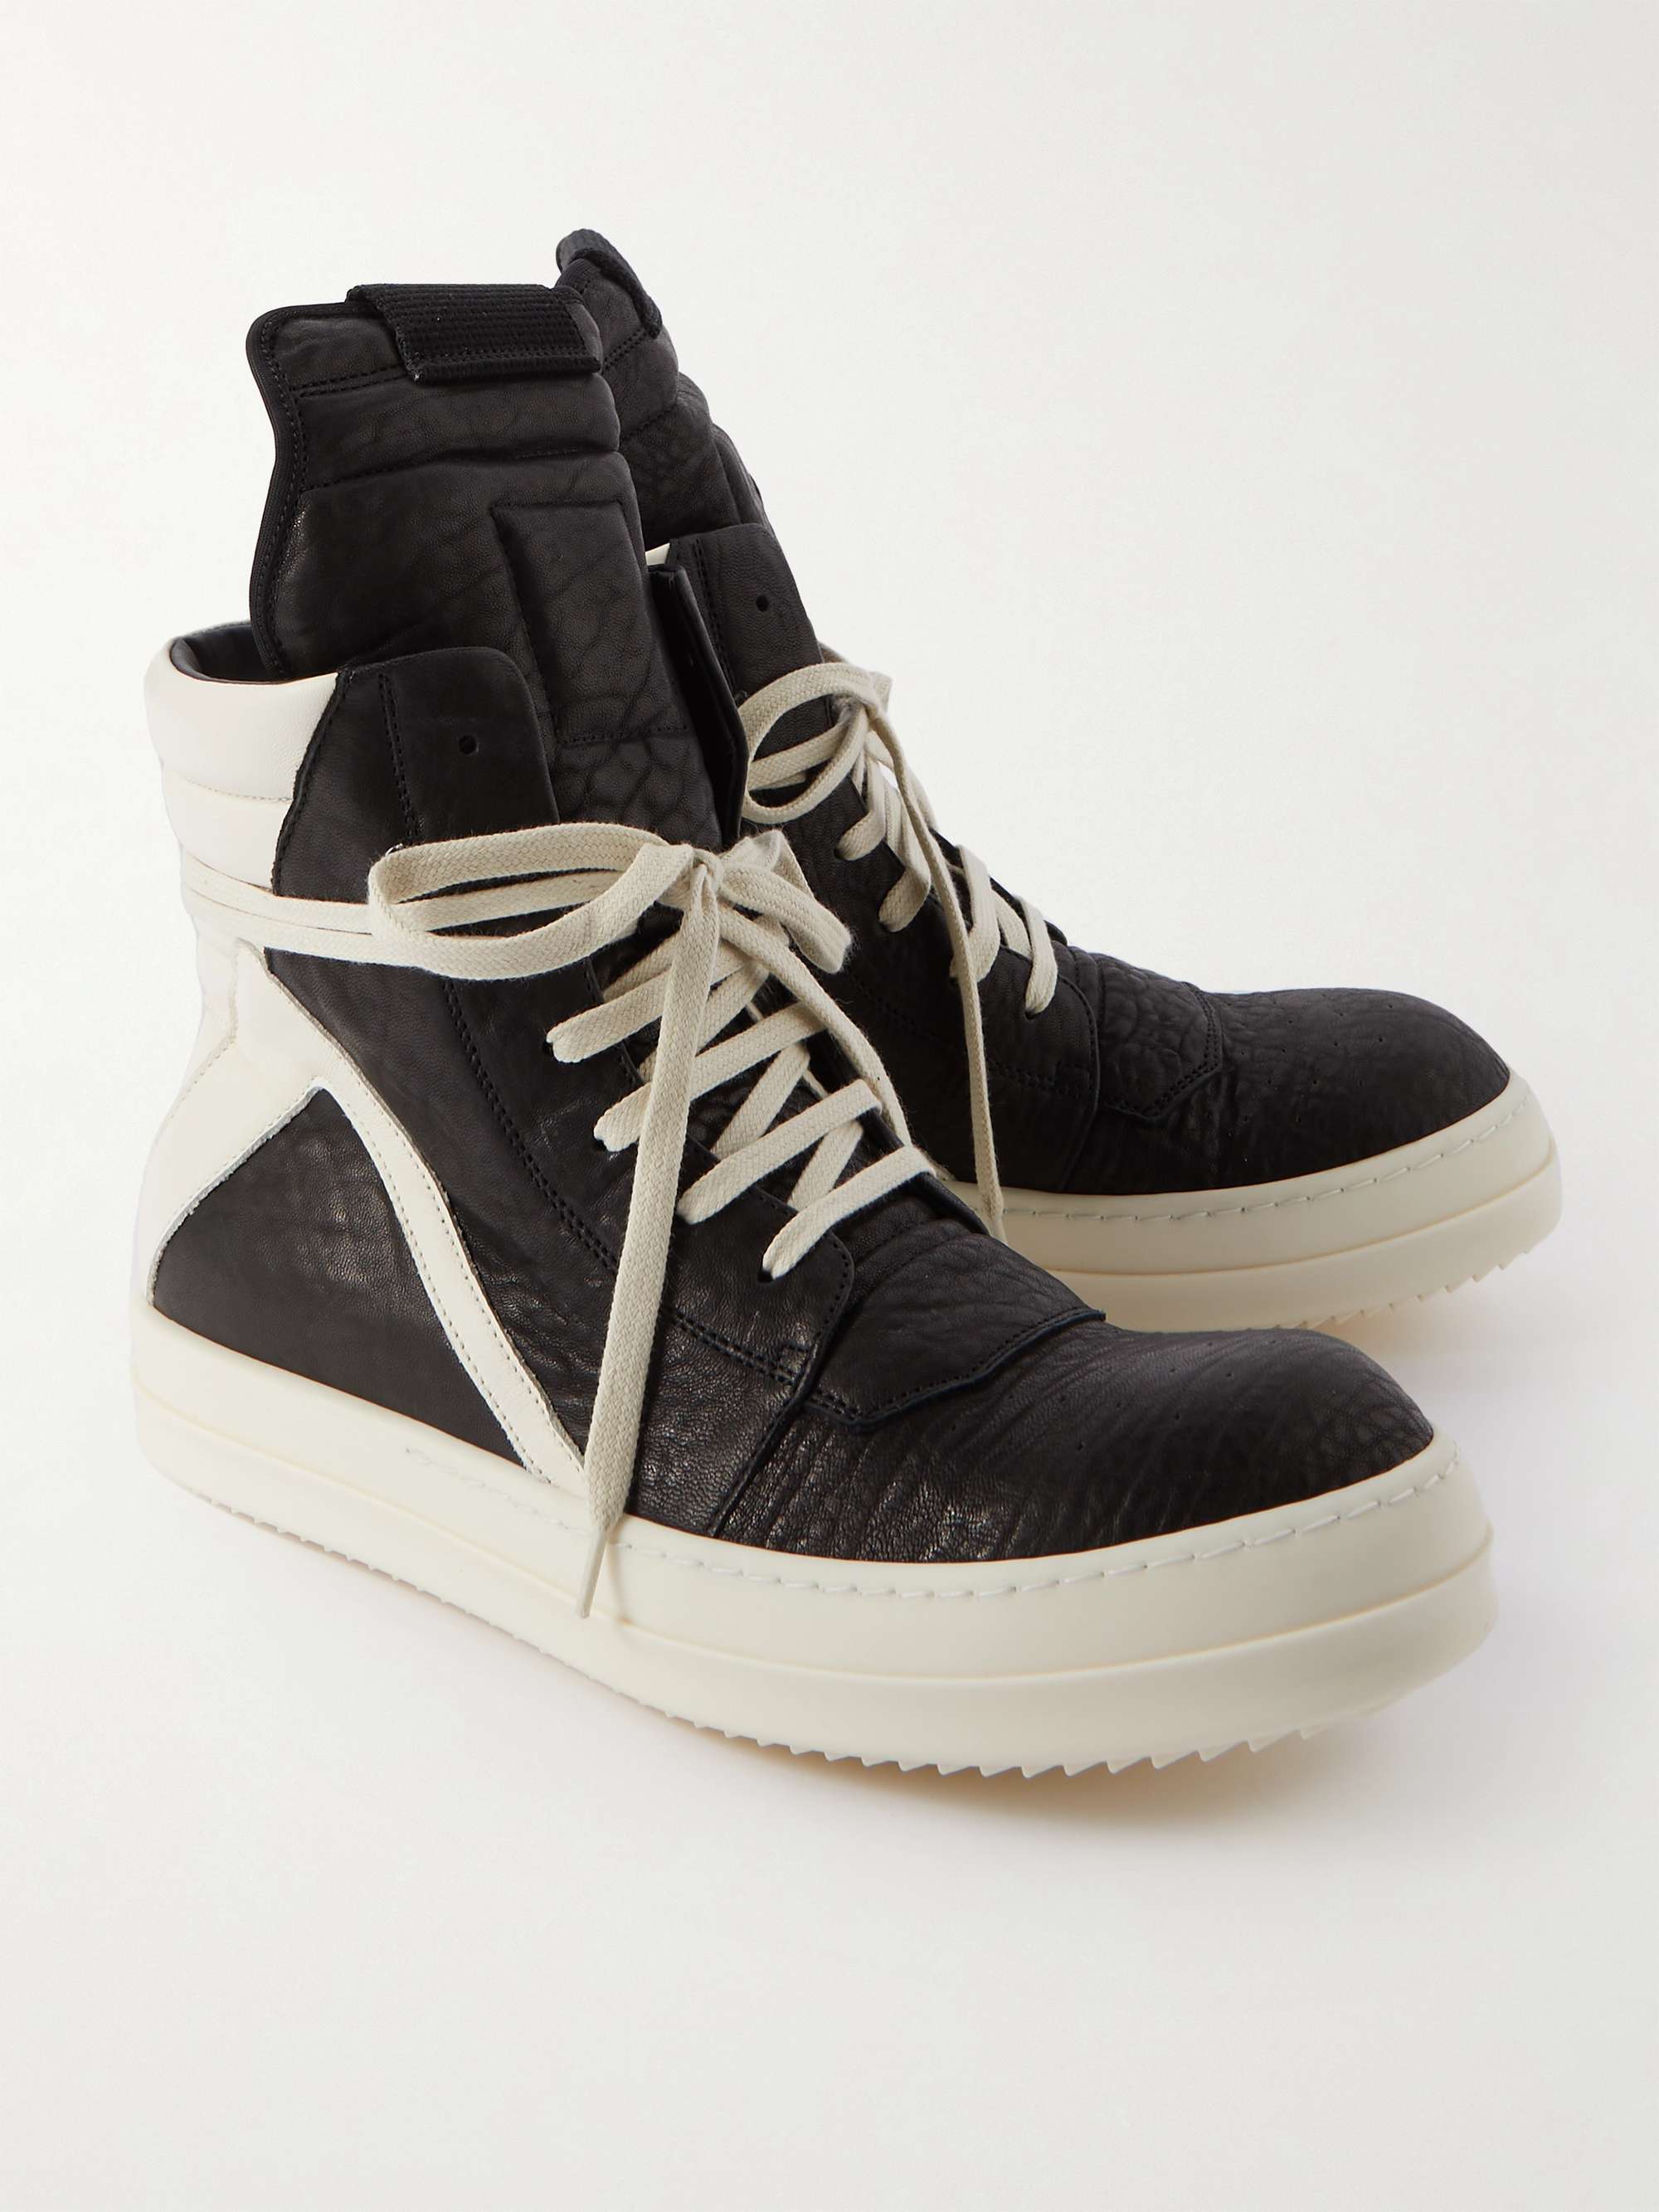 RICK OWENS Geobasket Full-Grain Leather High-Top Sneakers